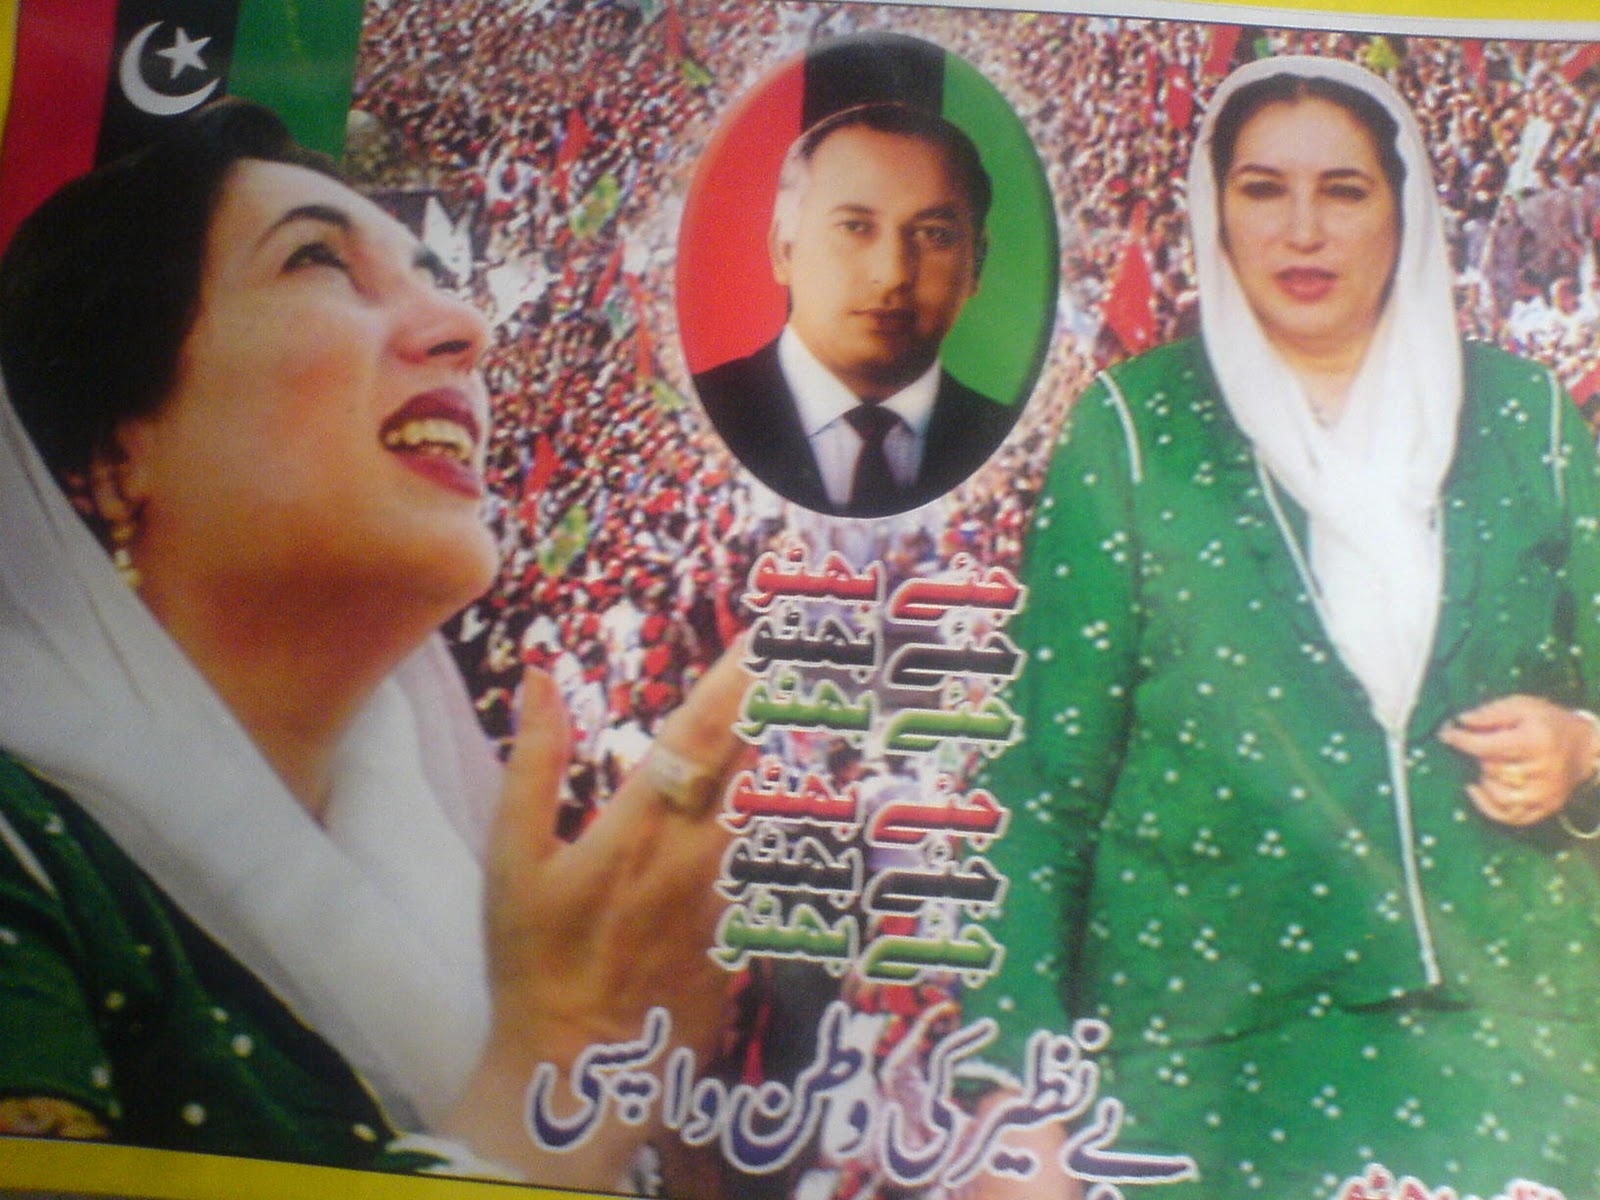 wallpaper: Wallpaper Benazir Bhutto